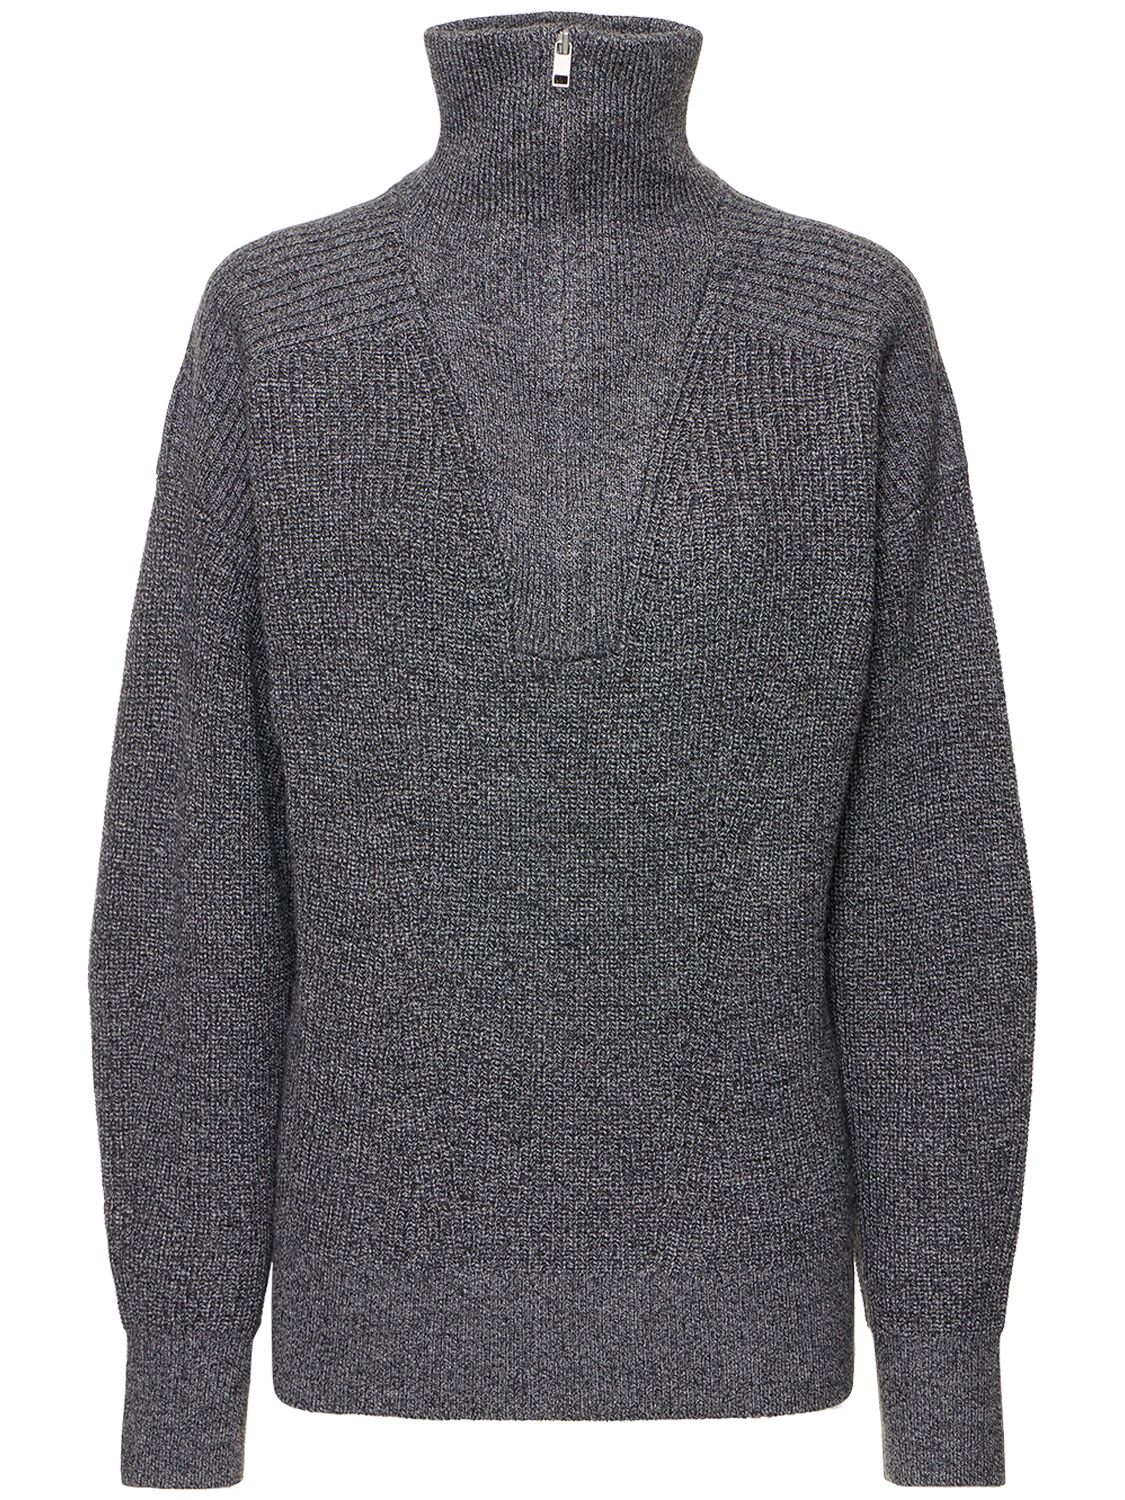 Benny Merino Knit Polo Sweater - MARANT ETOILE - Modalova